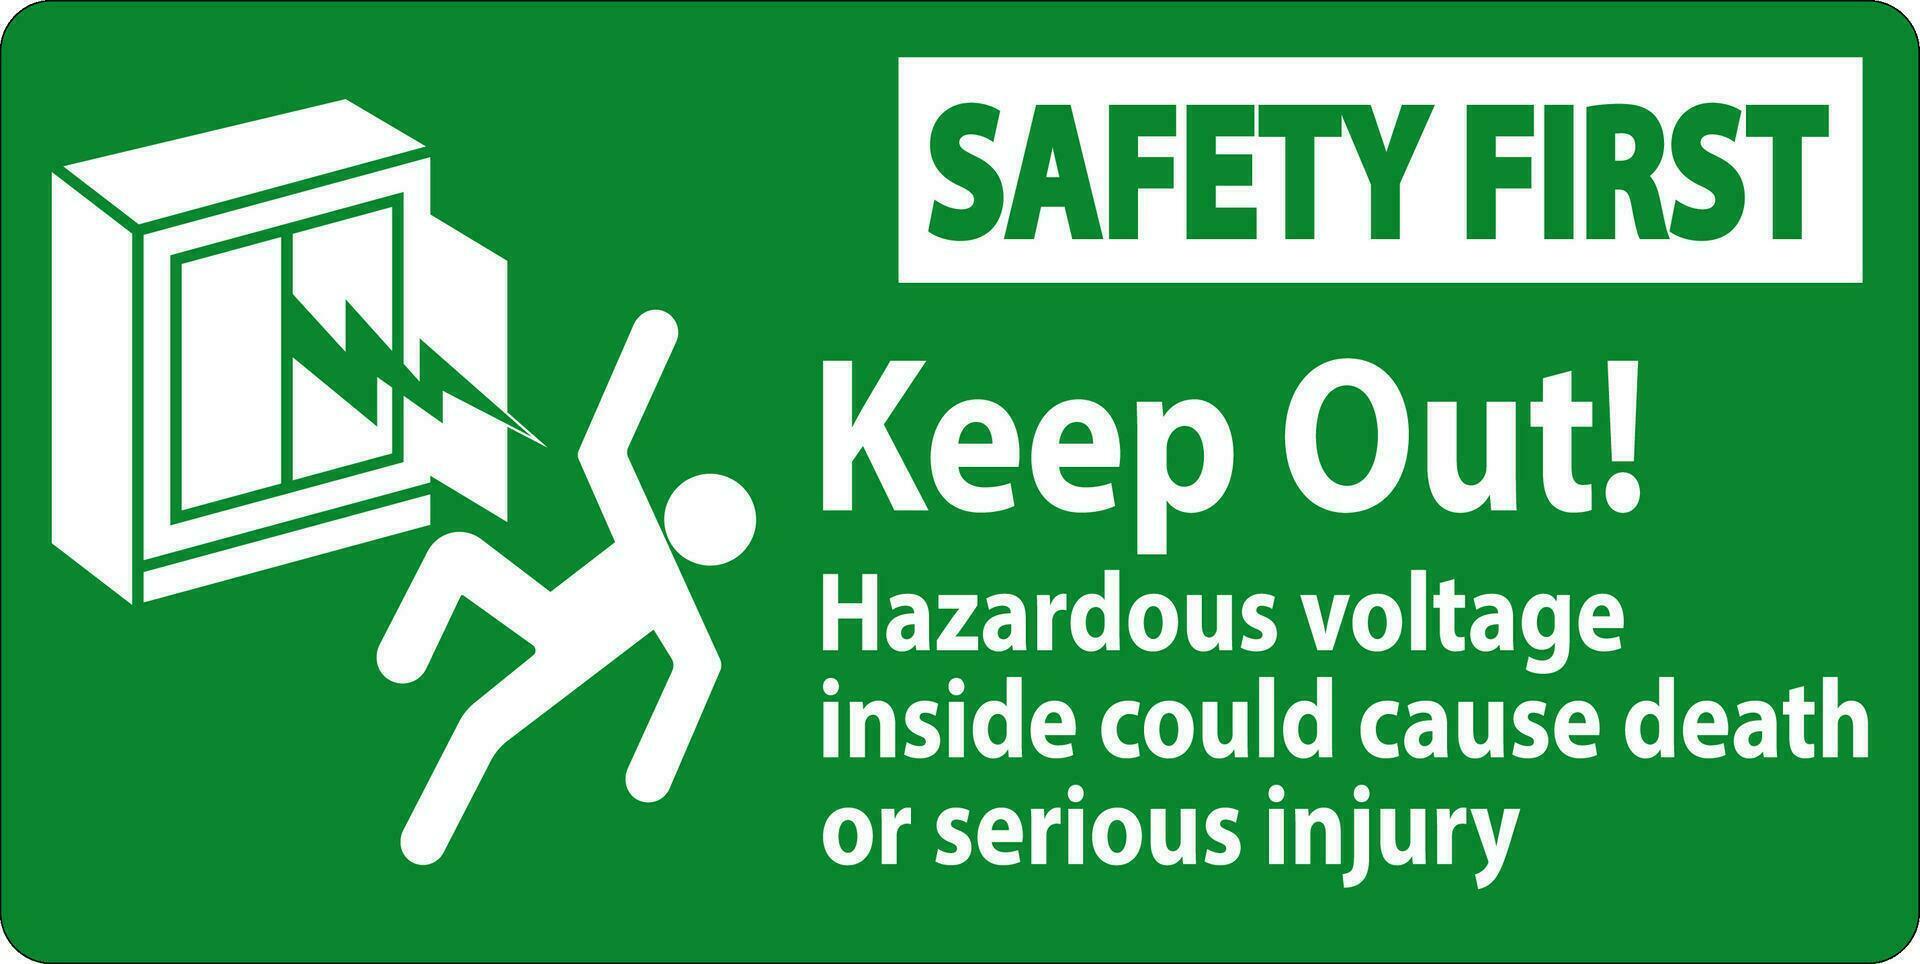 la seguridad primero firmar mantener fuera peligroso voltaje adentro, podría porque muerte o grave lesión vector